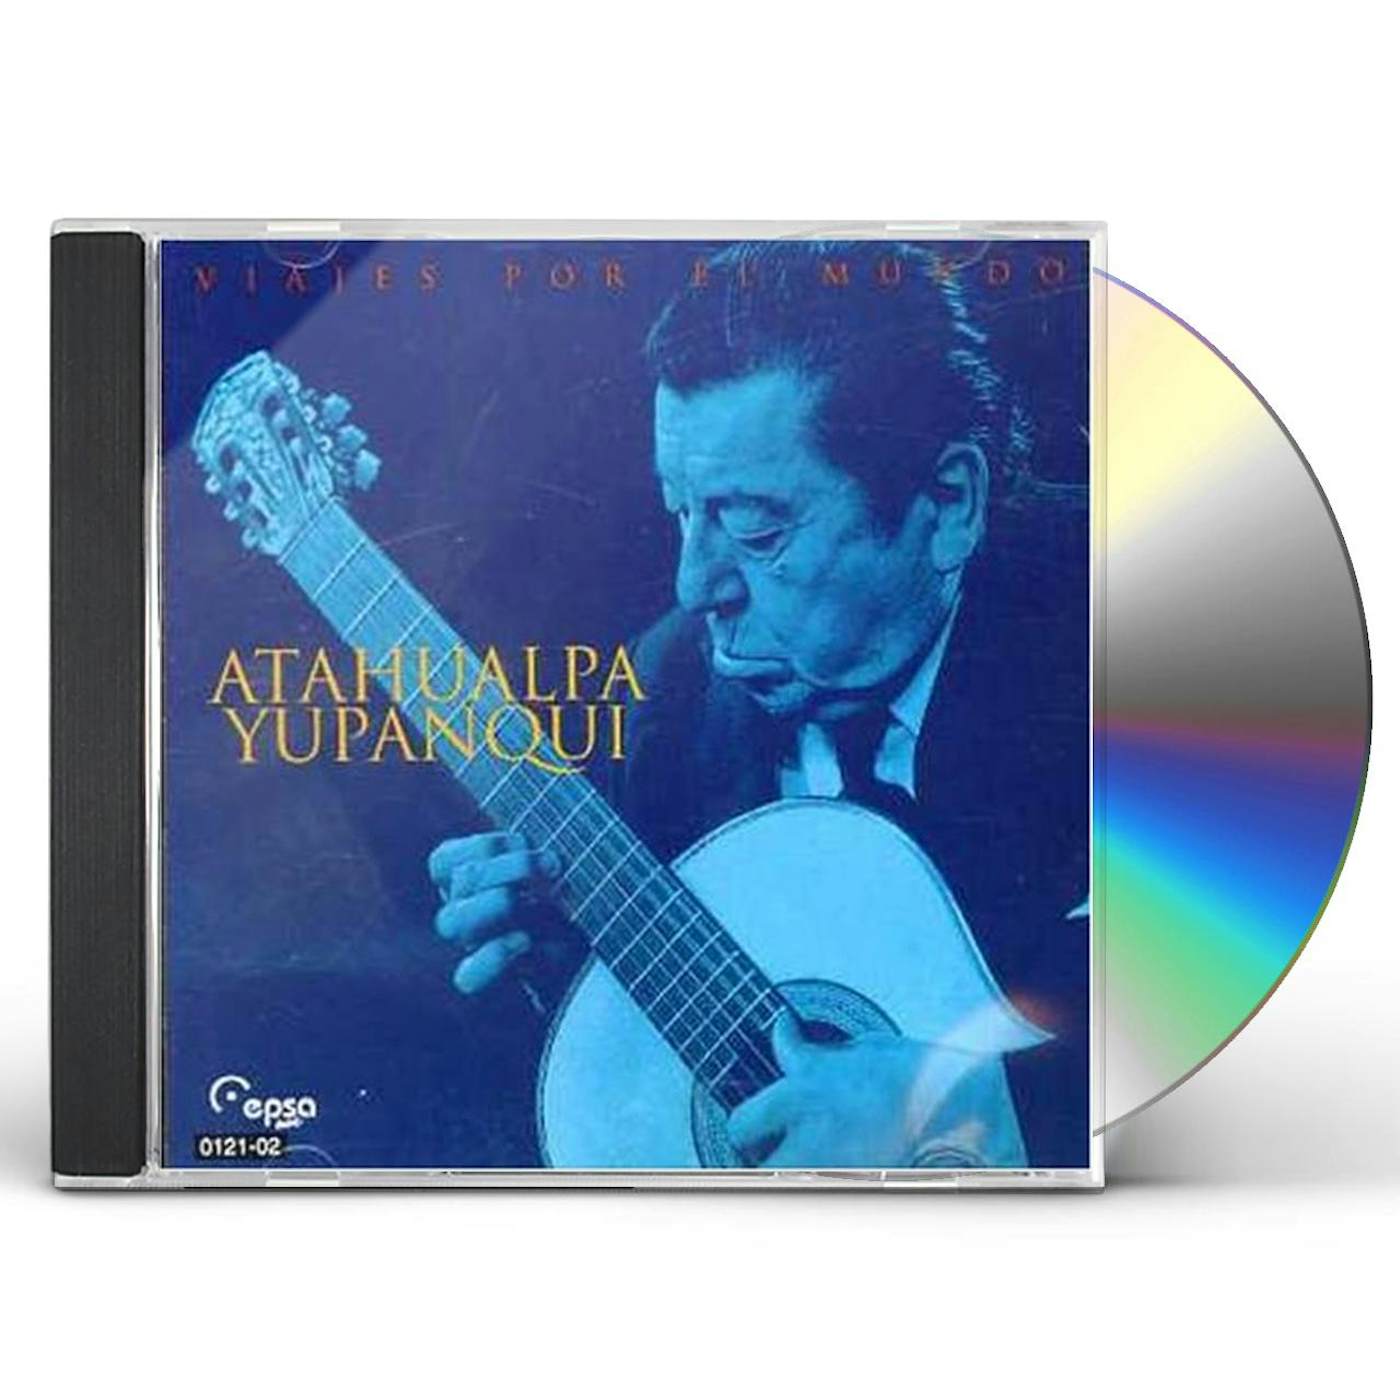 Atahualpa Yupanqui VIAJES POR EL MUNDO CD